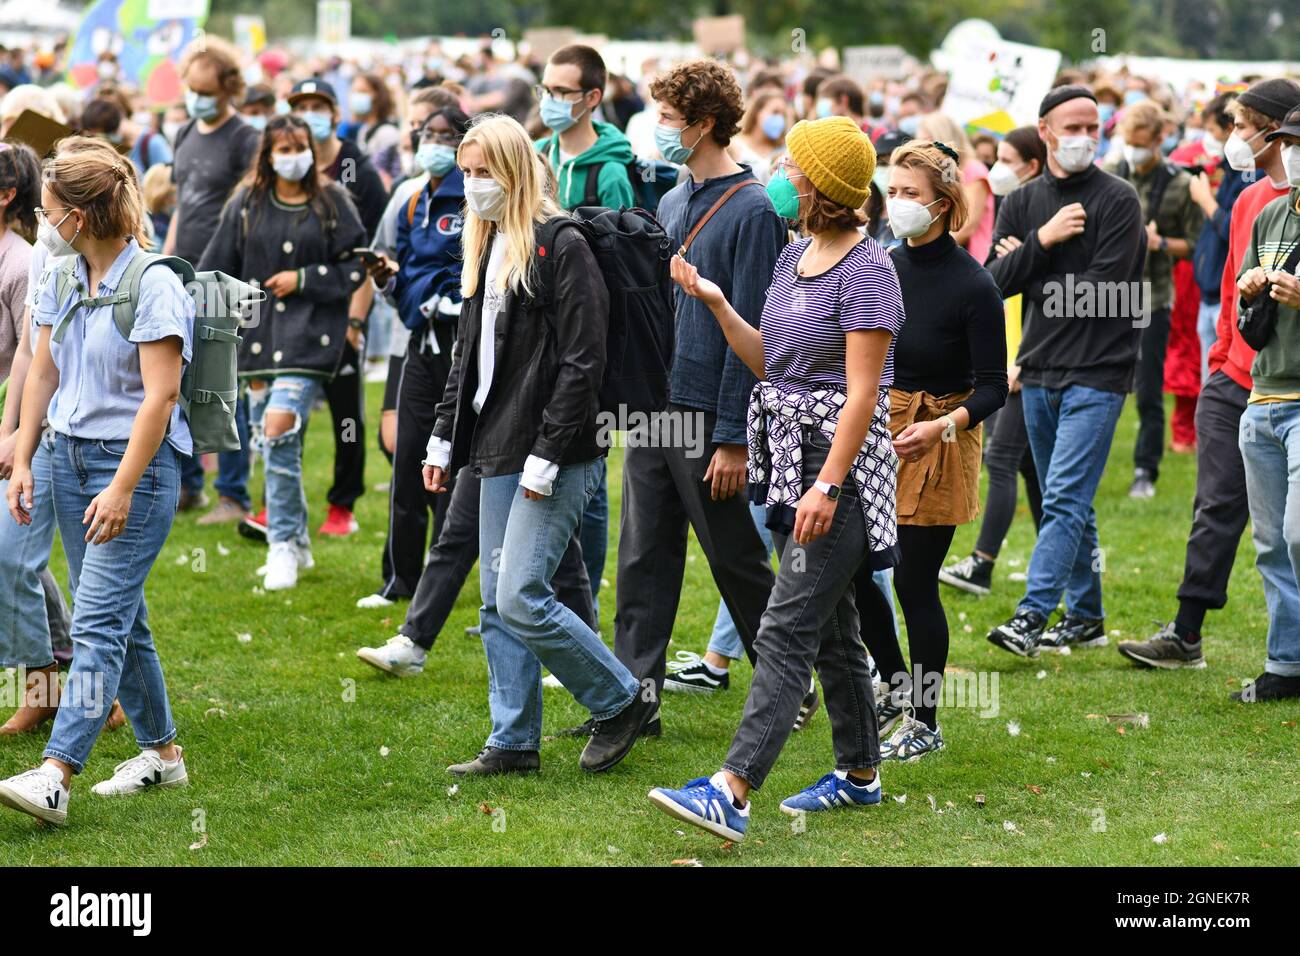 Heidelberg, Deutschland - 24. September 2021: Junge Menschen nehmen an der globalen Klimabrekendemonstration mit Gesichtsmasken während der Corona-Virus-Krise Teil Stockfoto